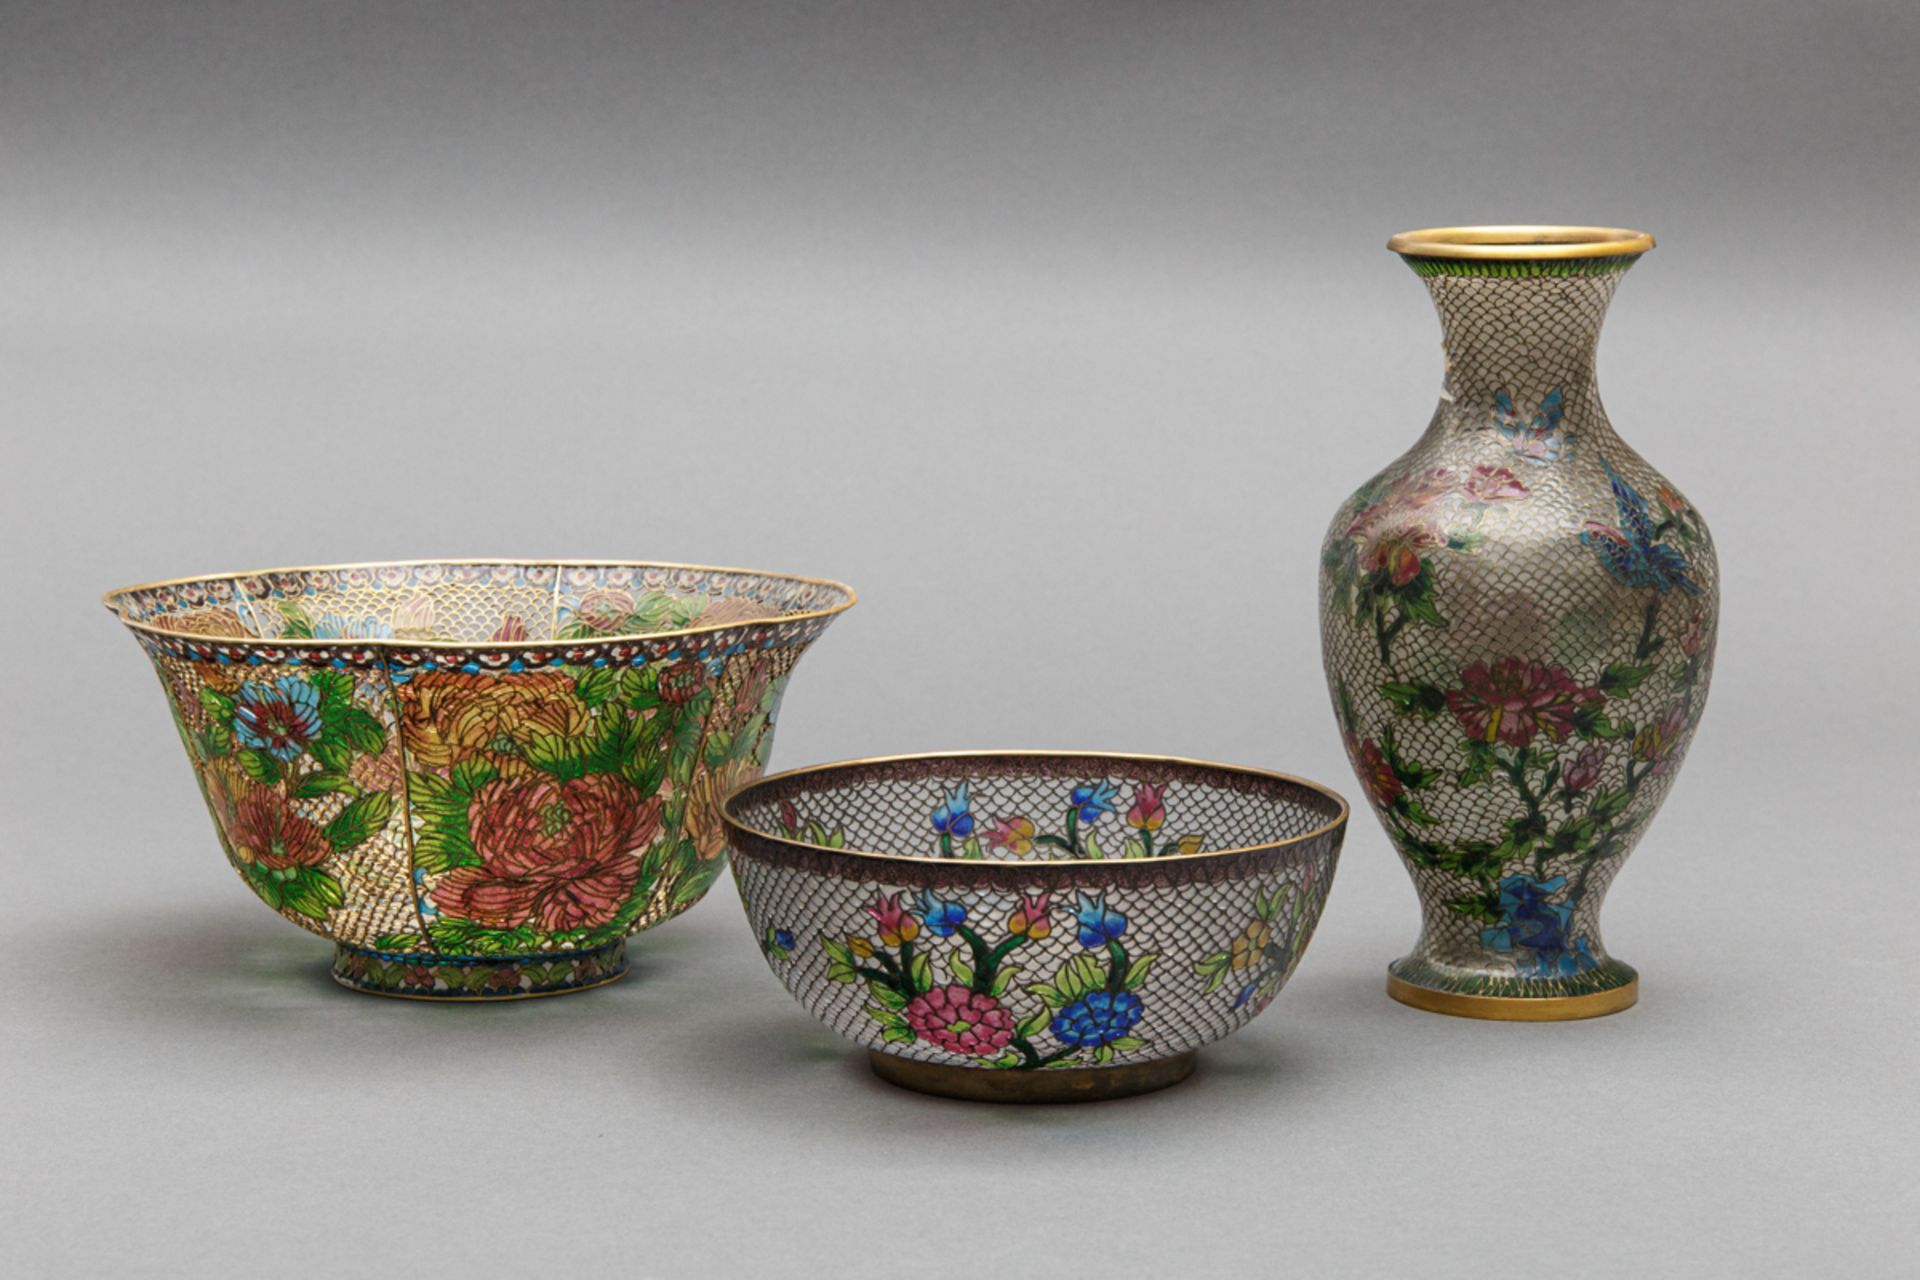 Feine Cloisonné-Garnitur, 2 Schalen und 1 Vase in 'Plique-à-jour', China, 2. H. 20. Jh.